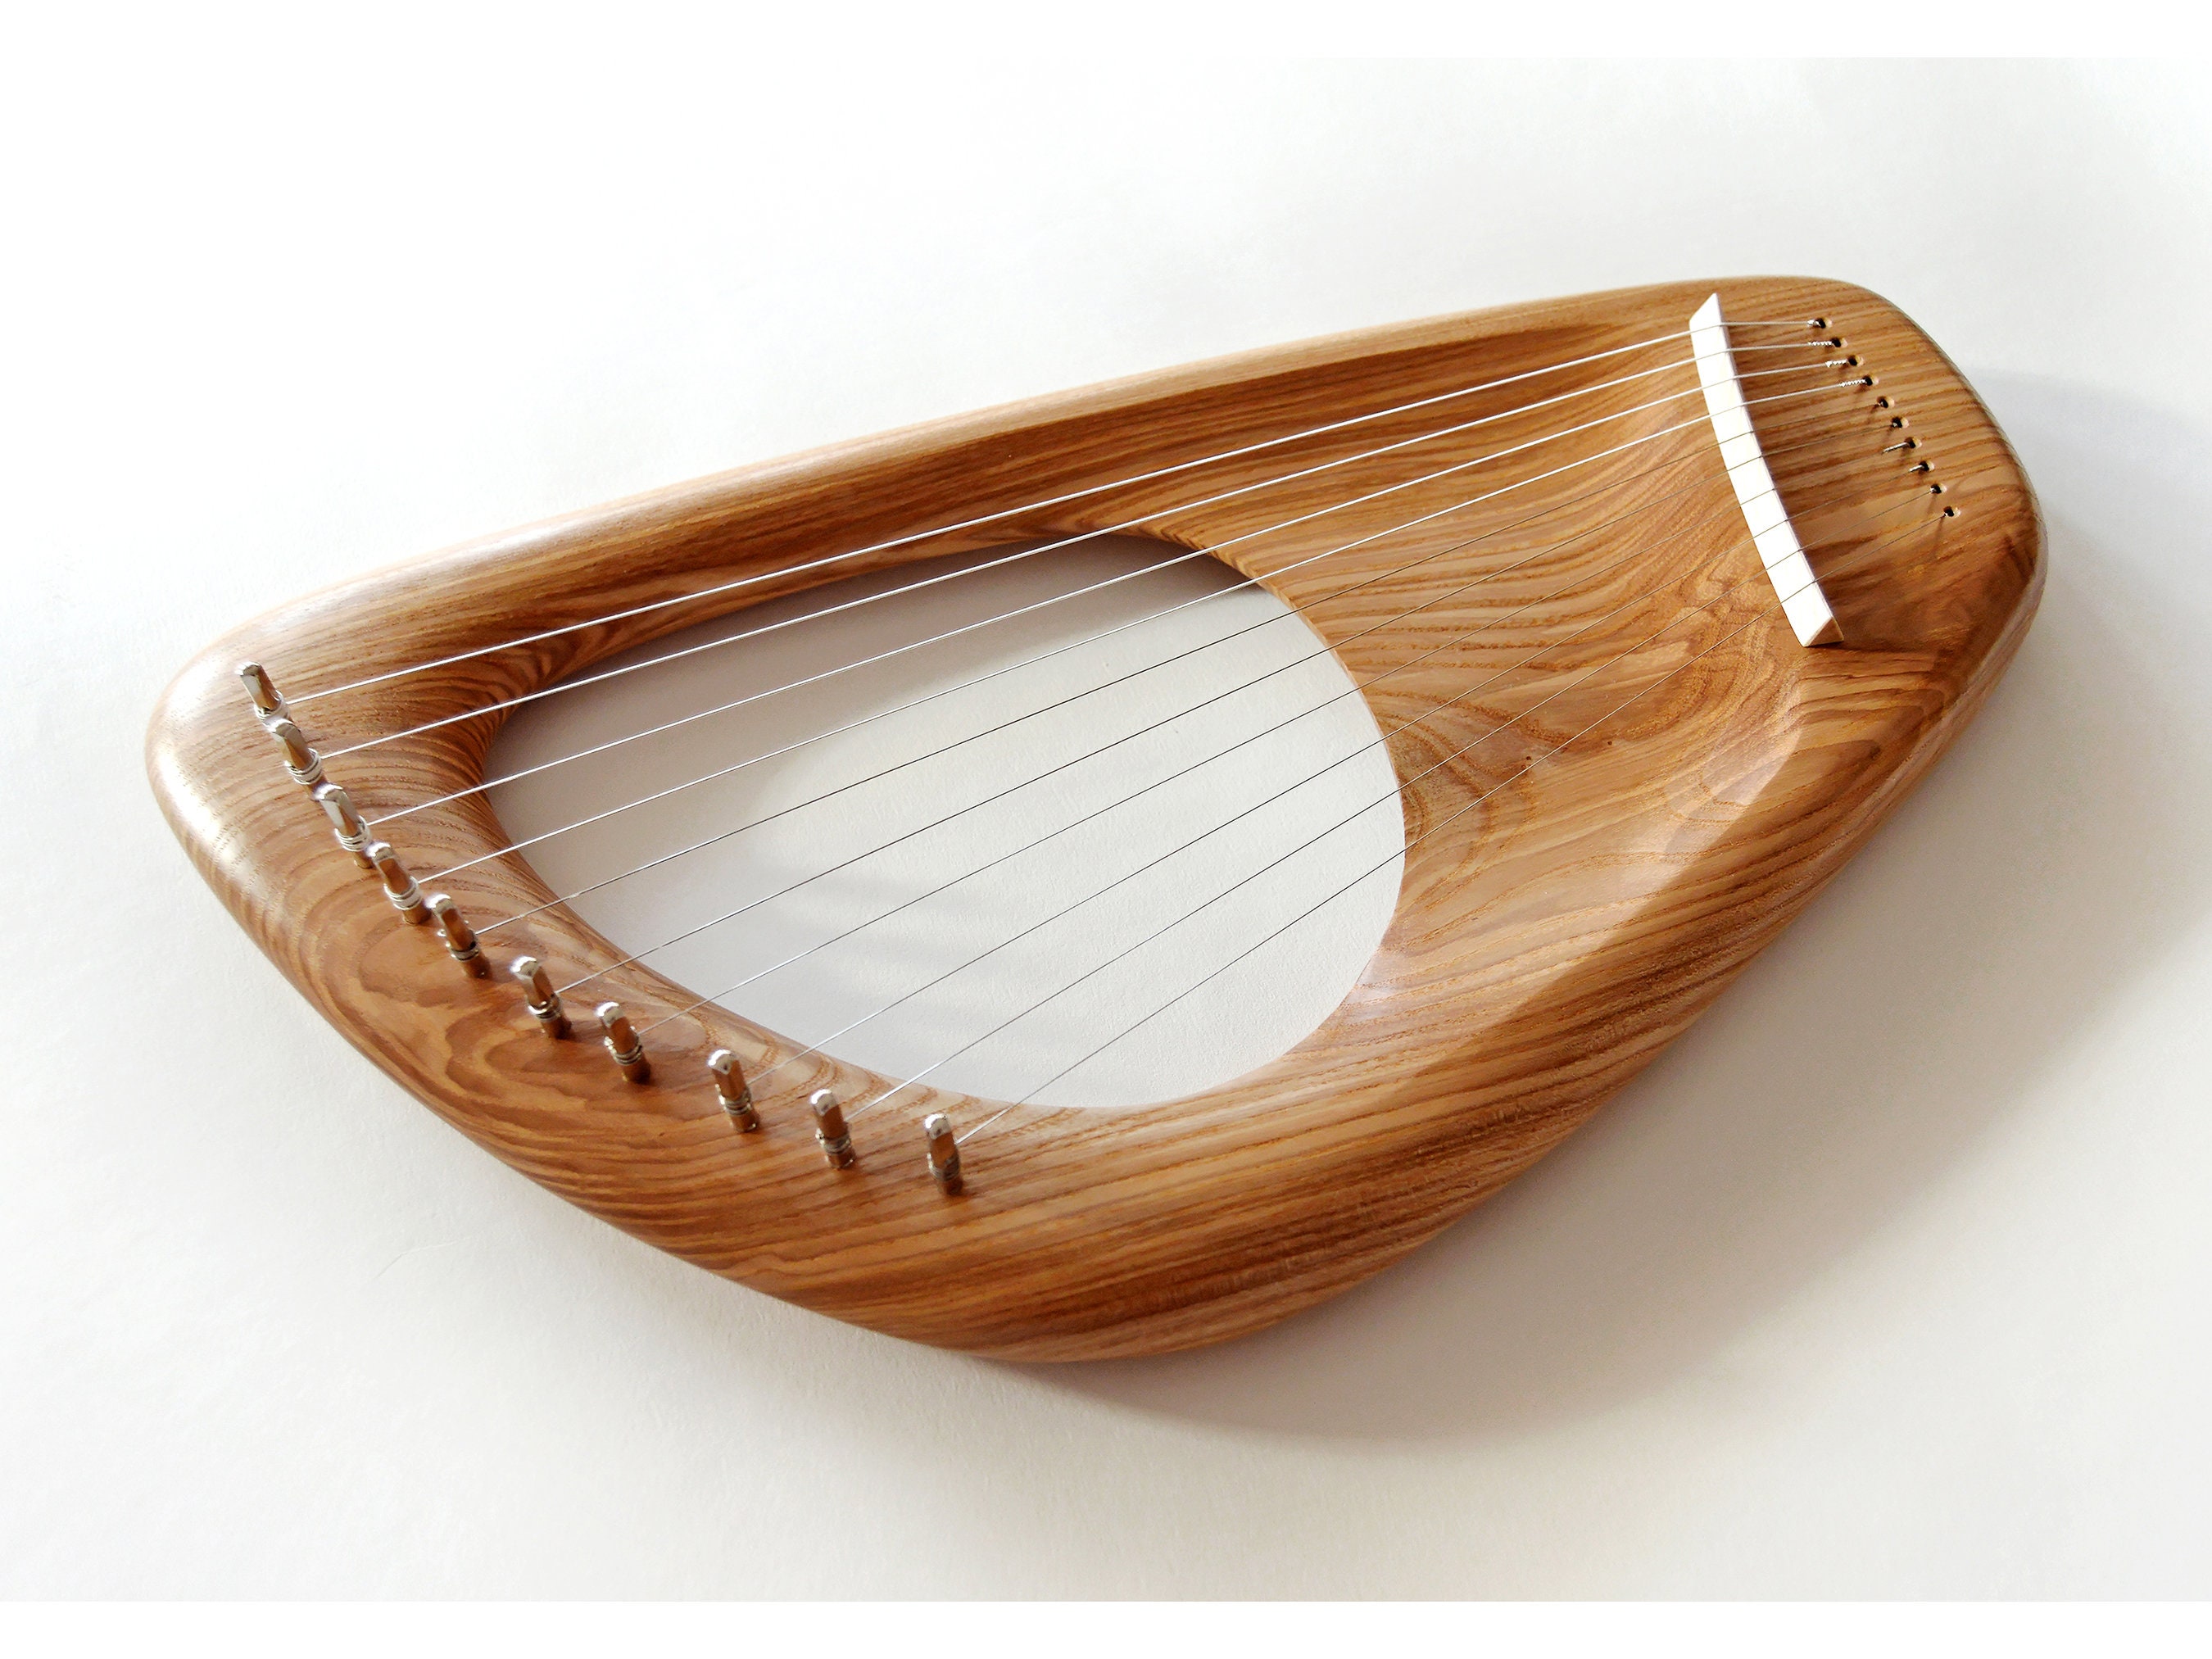 Lyre harp Pentatonic 10 String Musical Instrument -  Denmark